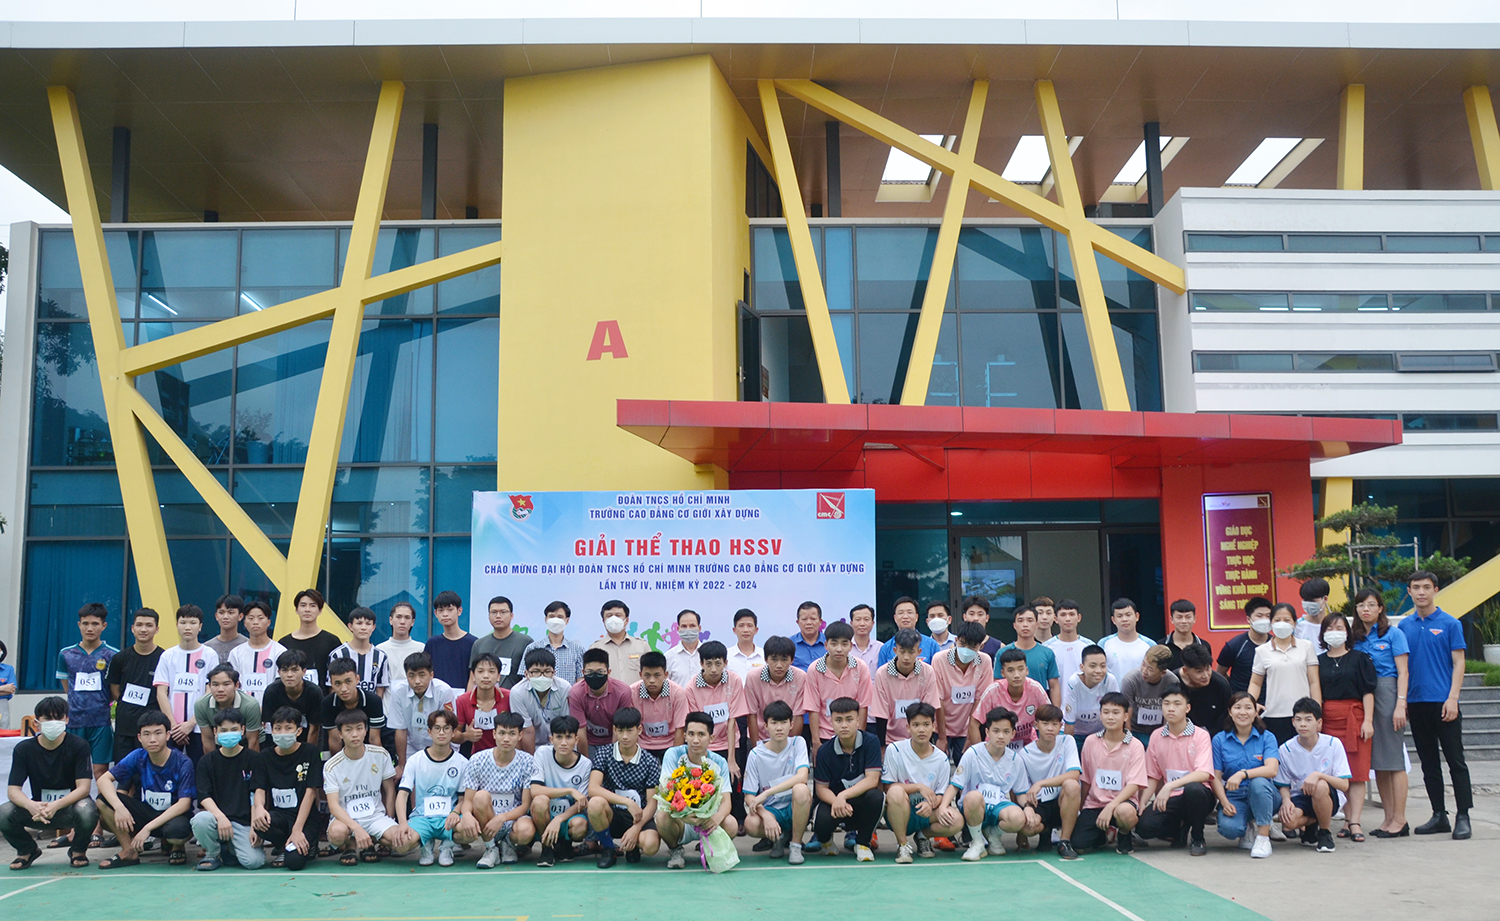 Khai mạc Giải thi đấu thể thao HSSV chào mừng Đại hội Đoàn TNCS Hồ Chí Minh trường Cao đẳng Cơ giới Xây dựng lần thứ IV, nhiệm kỳ 2022-2024